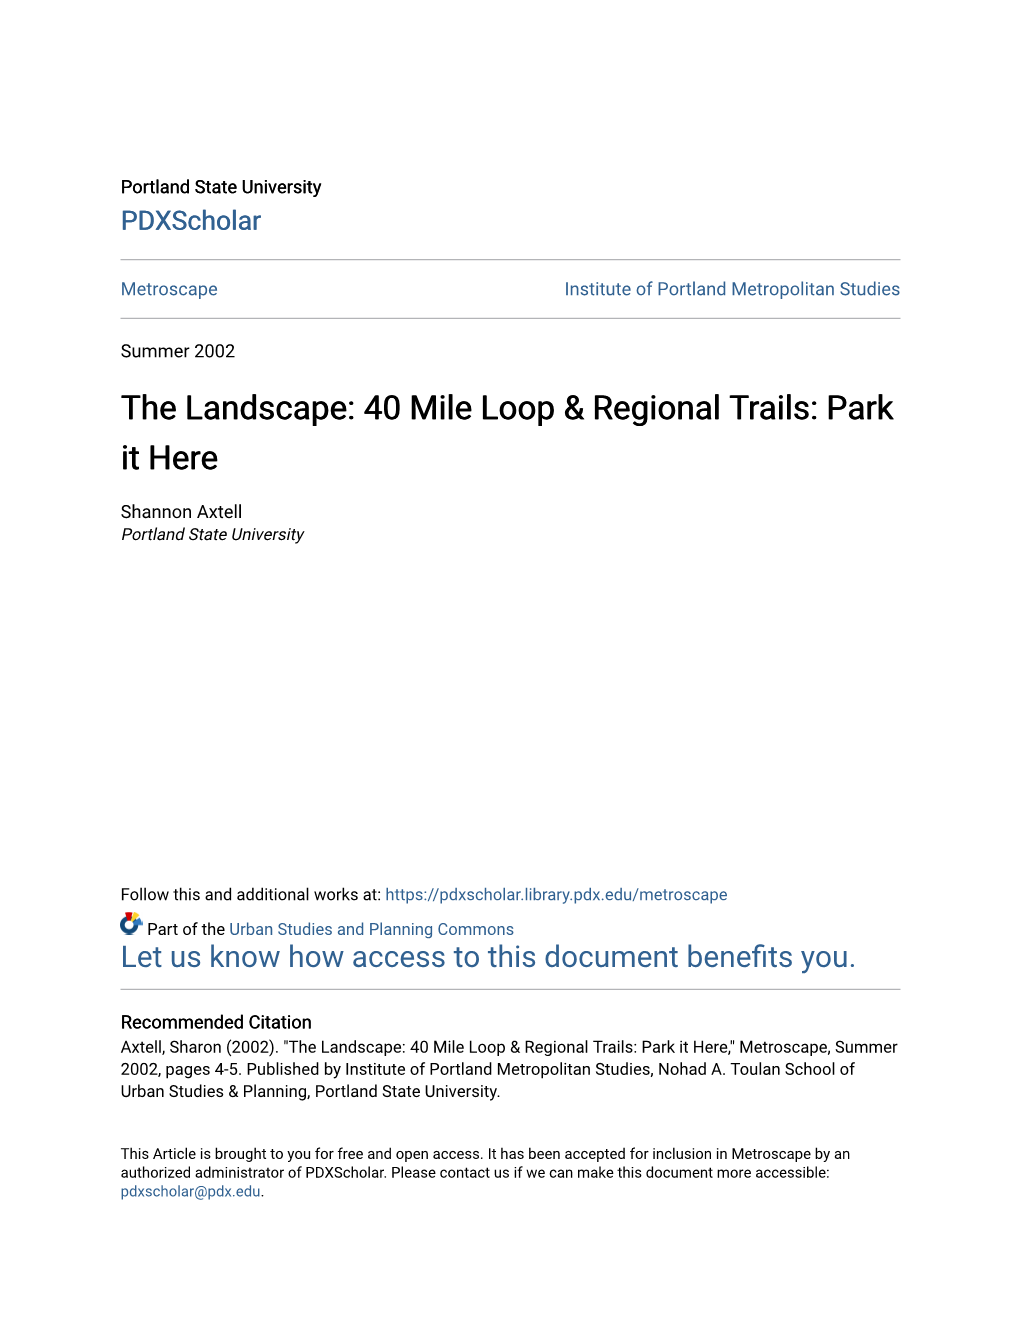 40 Mile Loop & Regional Trails